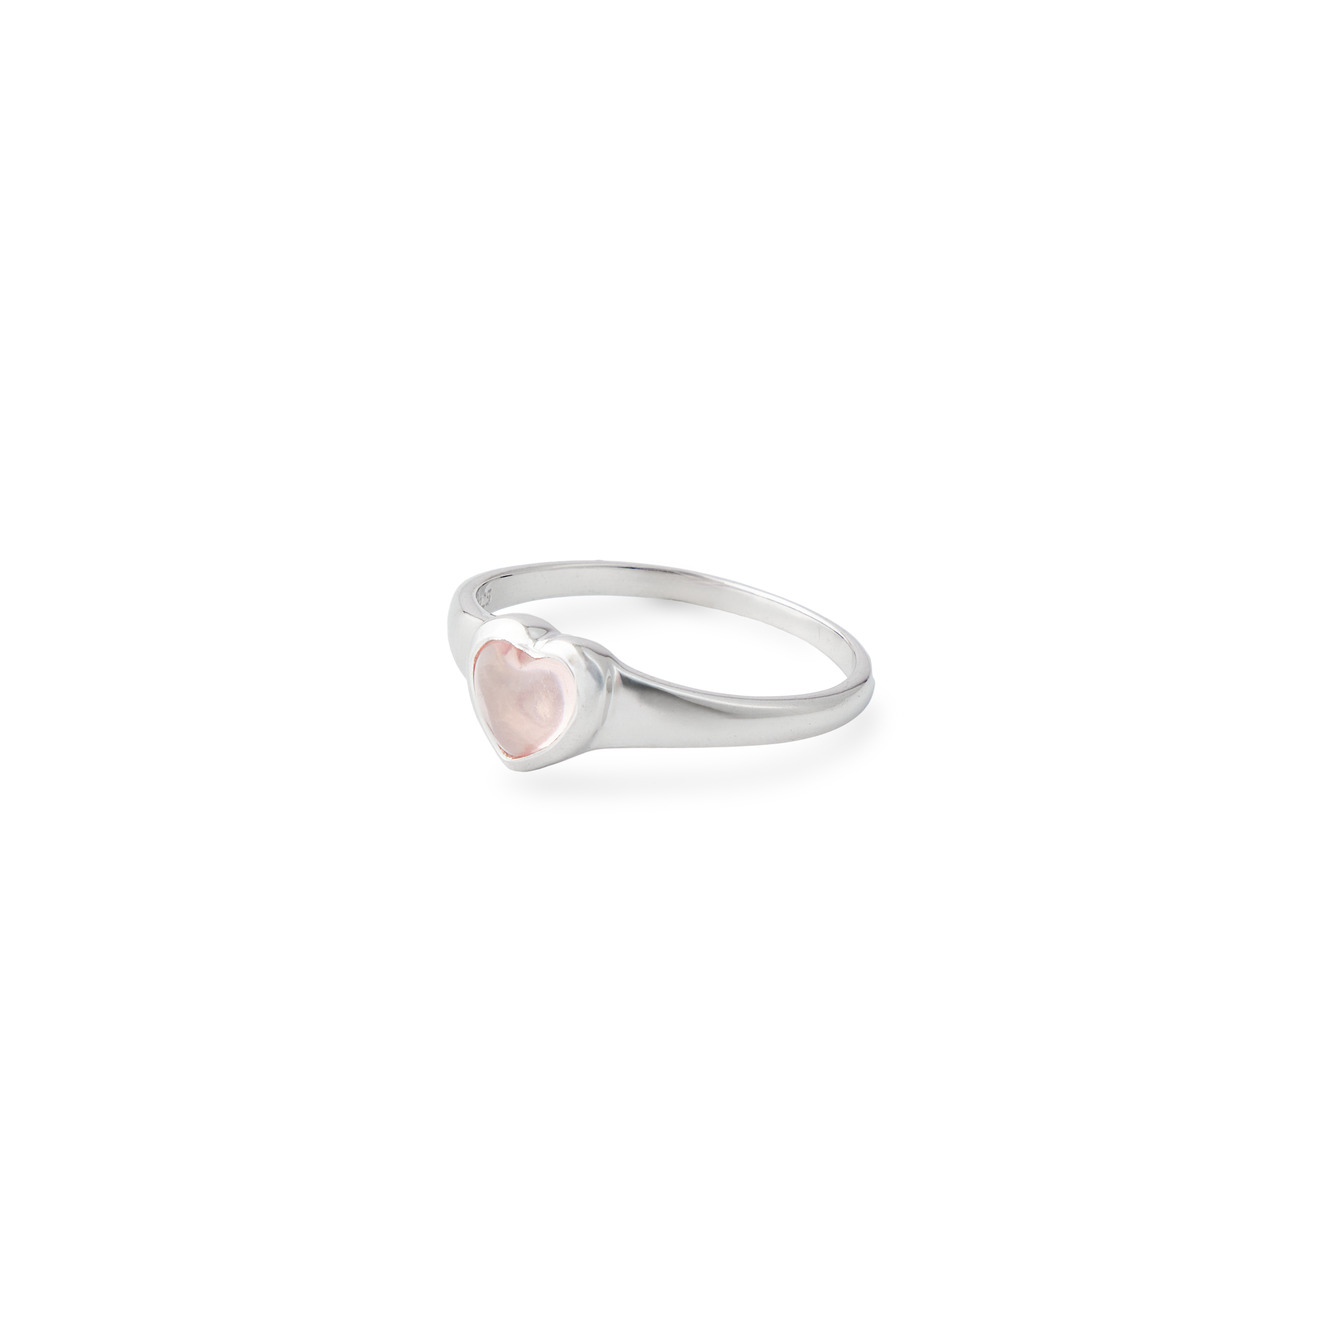 Wisteria Gems Серебряное кольцо с сердцем из розового кварца